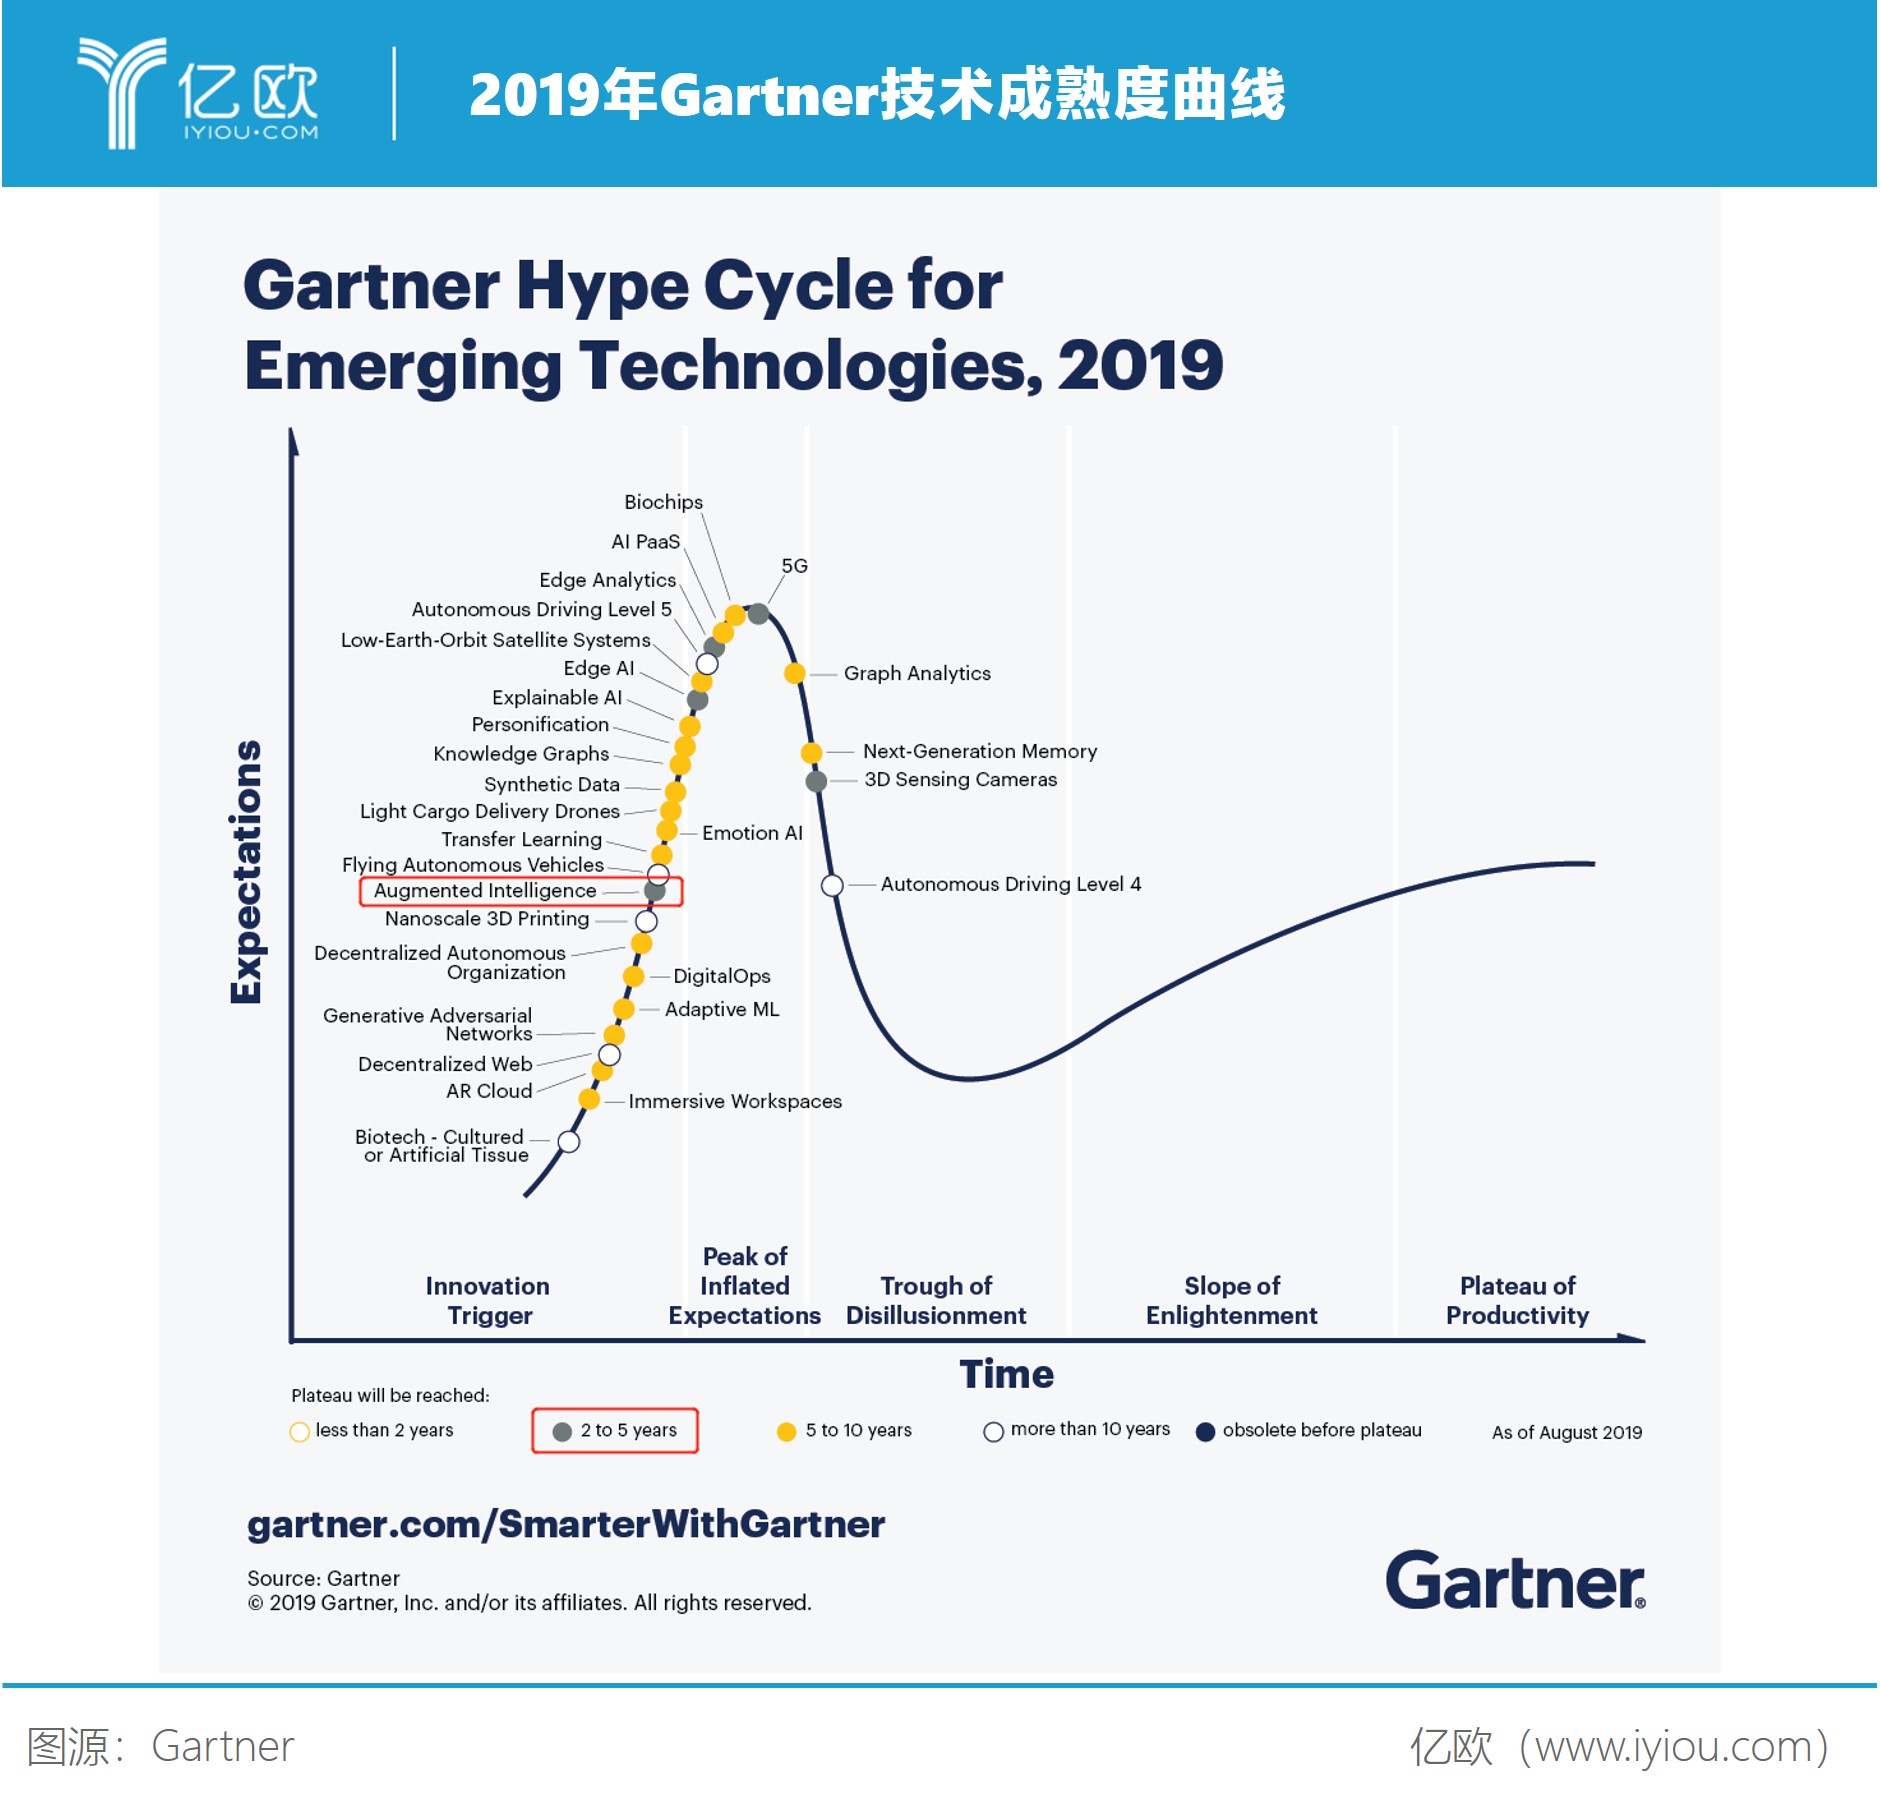 2019年Gartner技术成熟度曲线